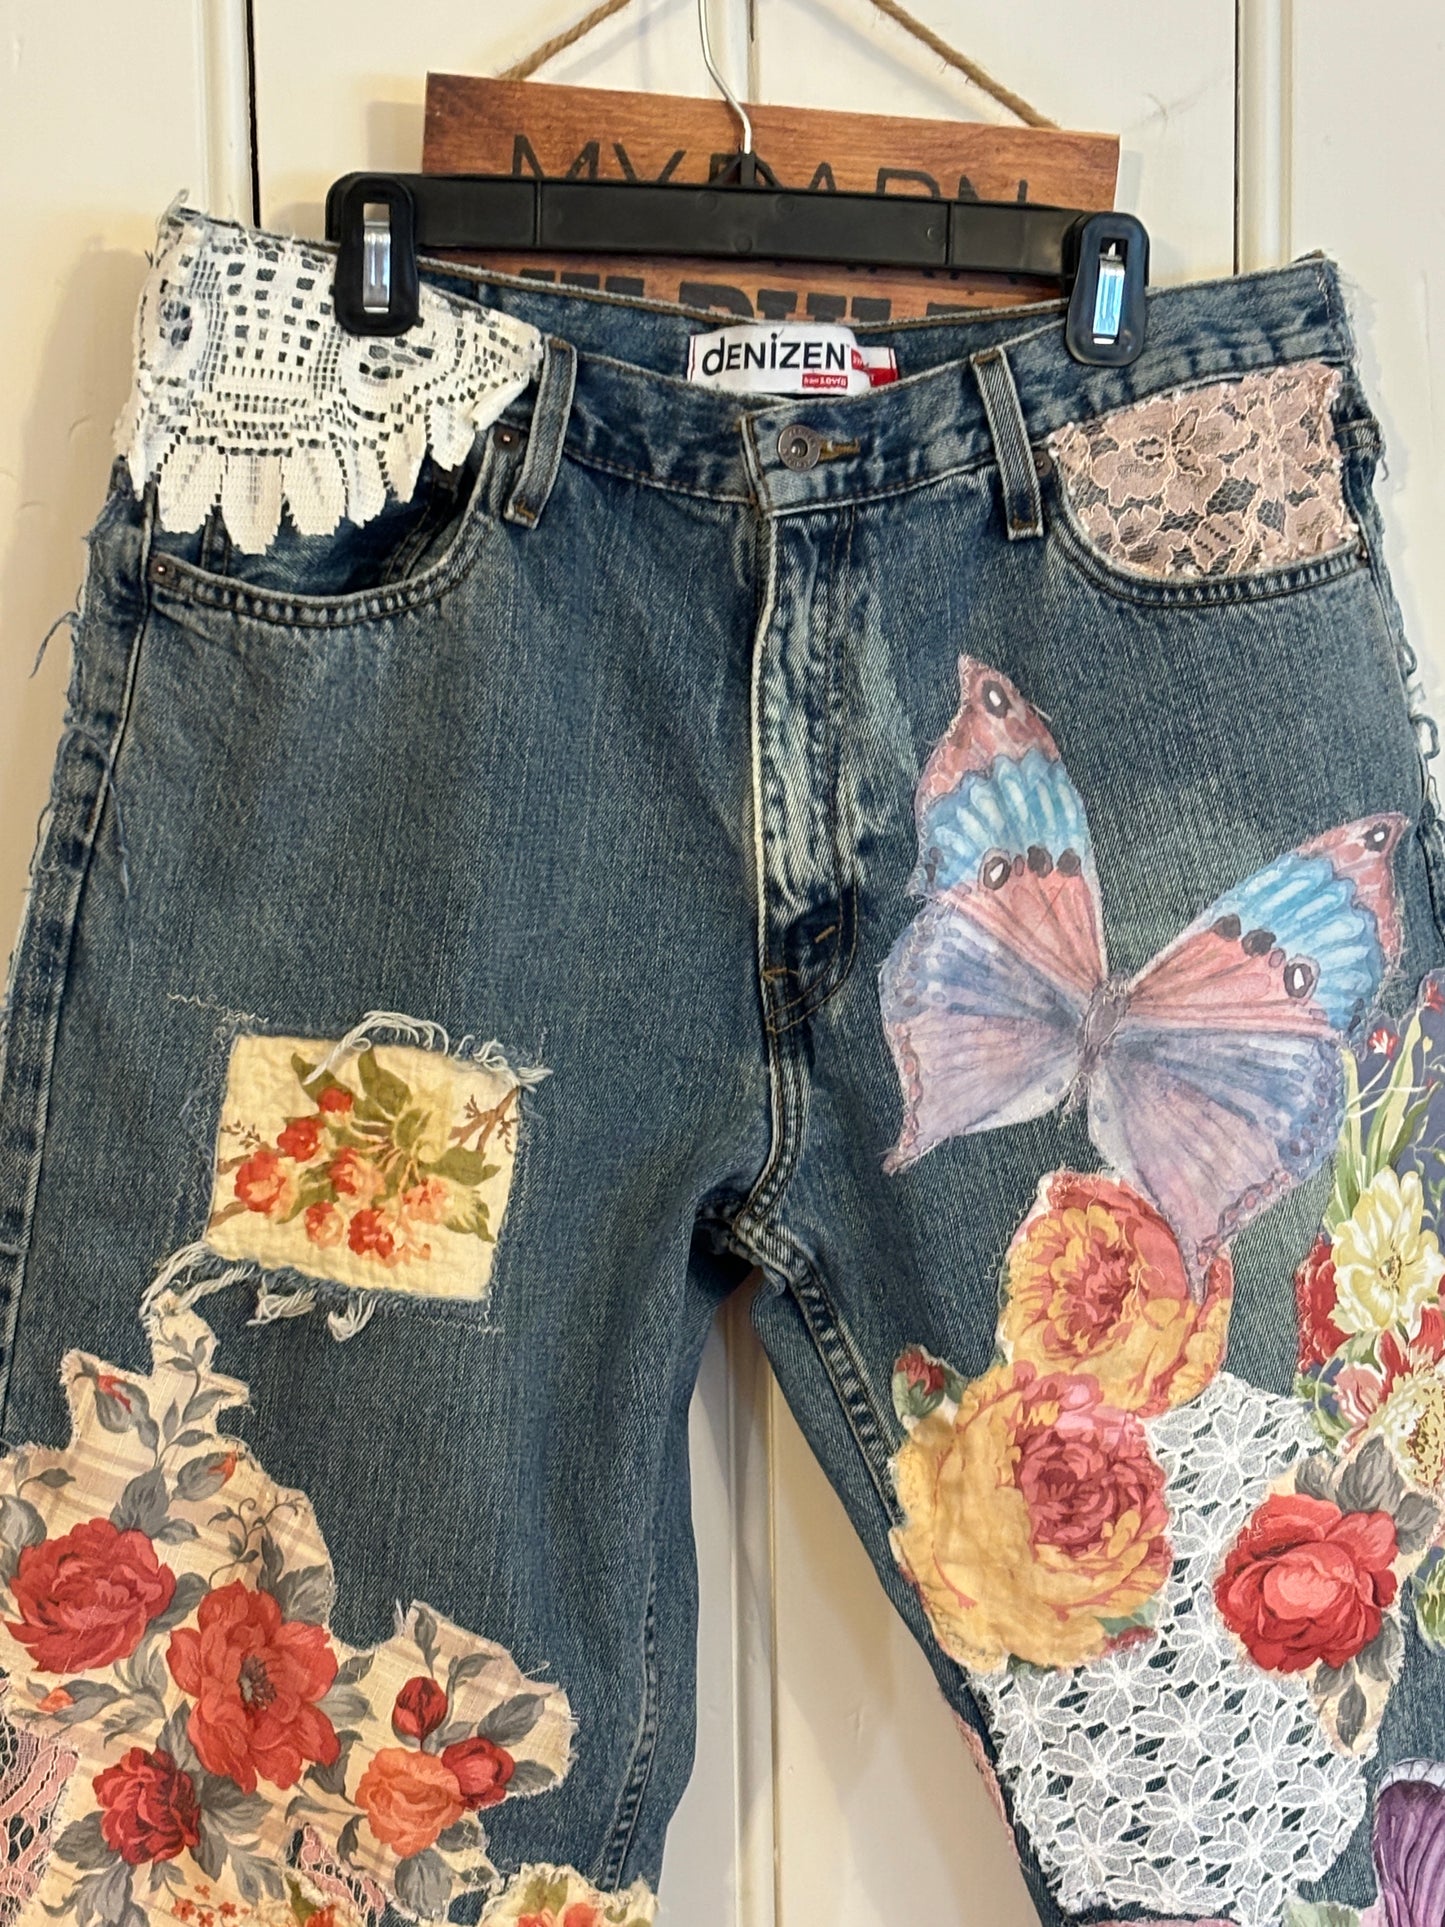 Up-Cycled, Levis Denizen Brand Art Jeans, Altered Boyfriend, Distressed, Floral, Butterflies, Lace, Applique, Appliques Size, 37 x 32